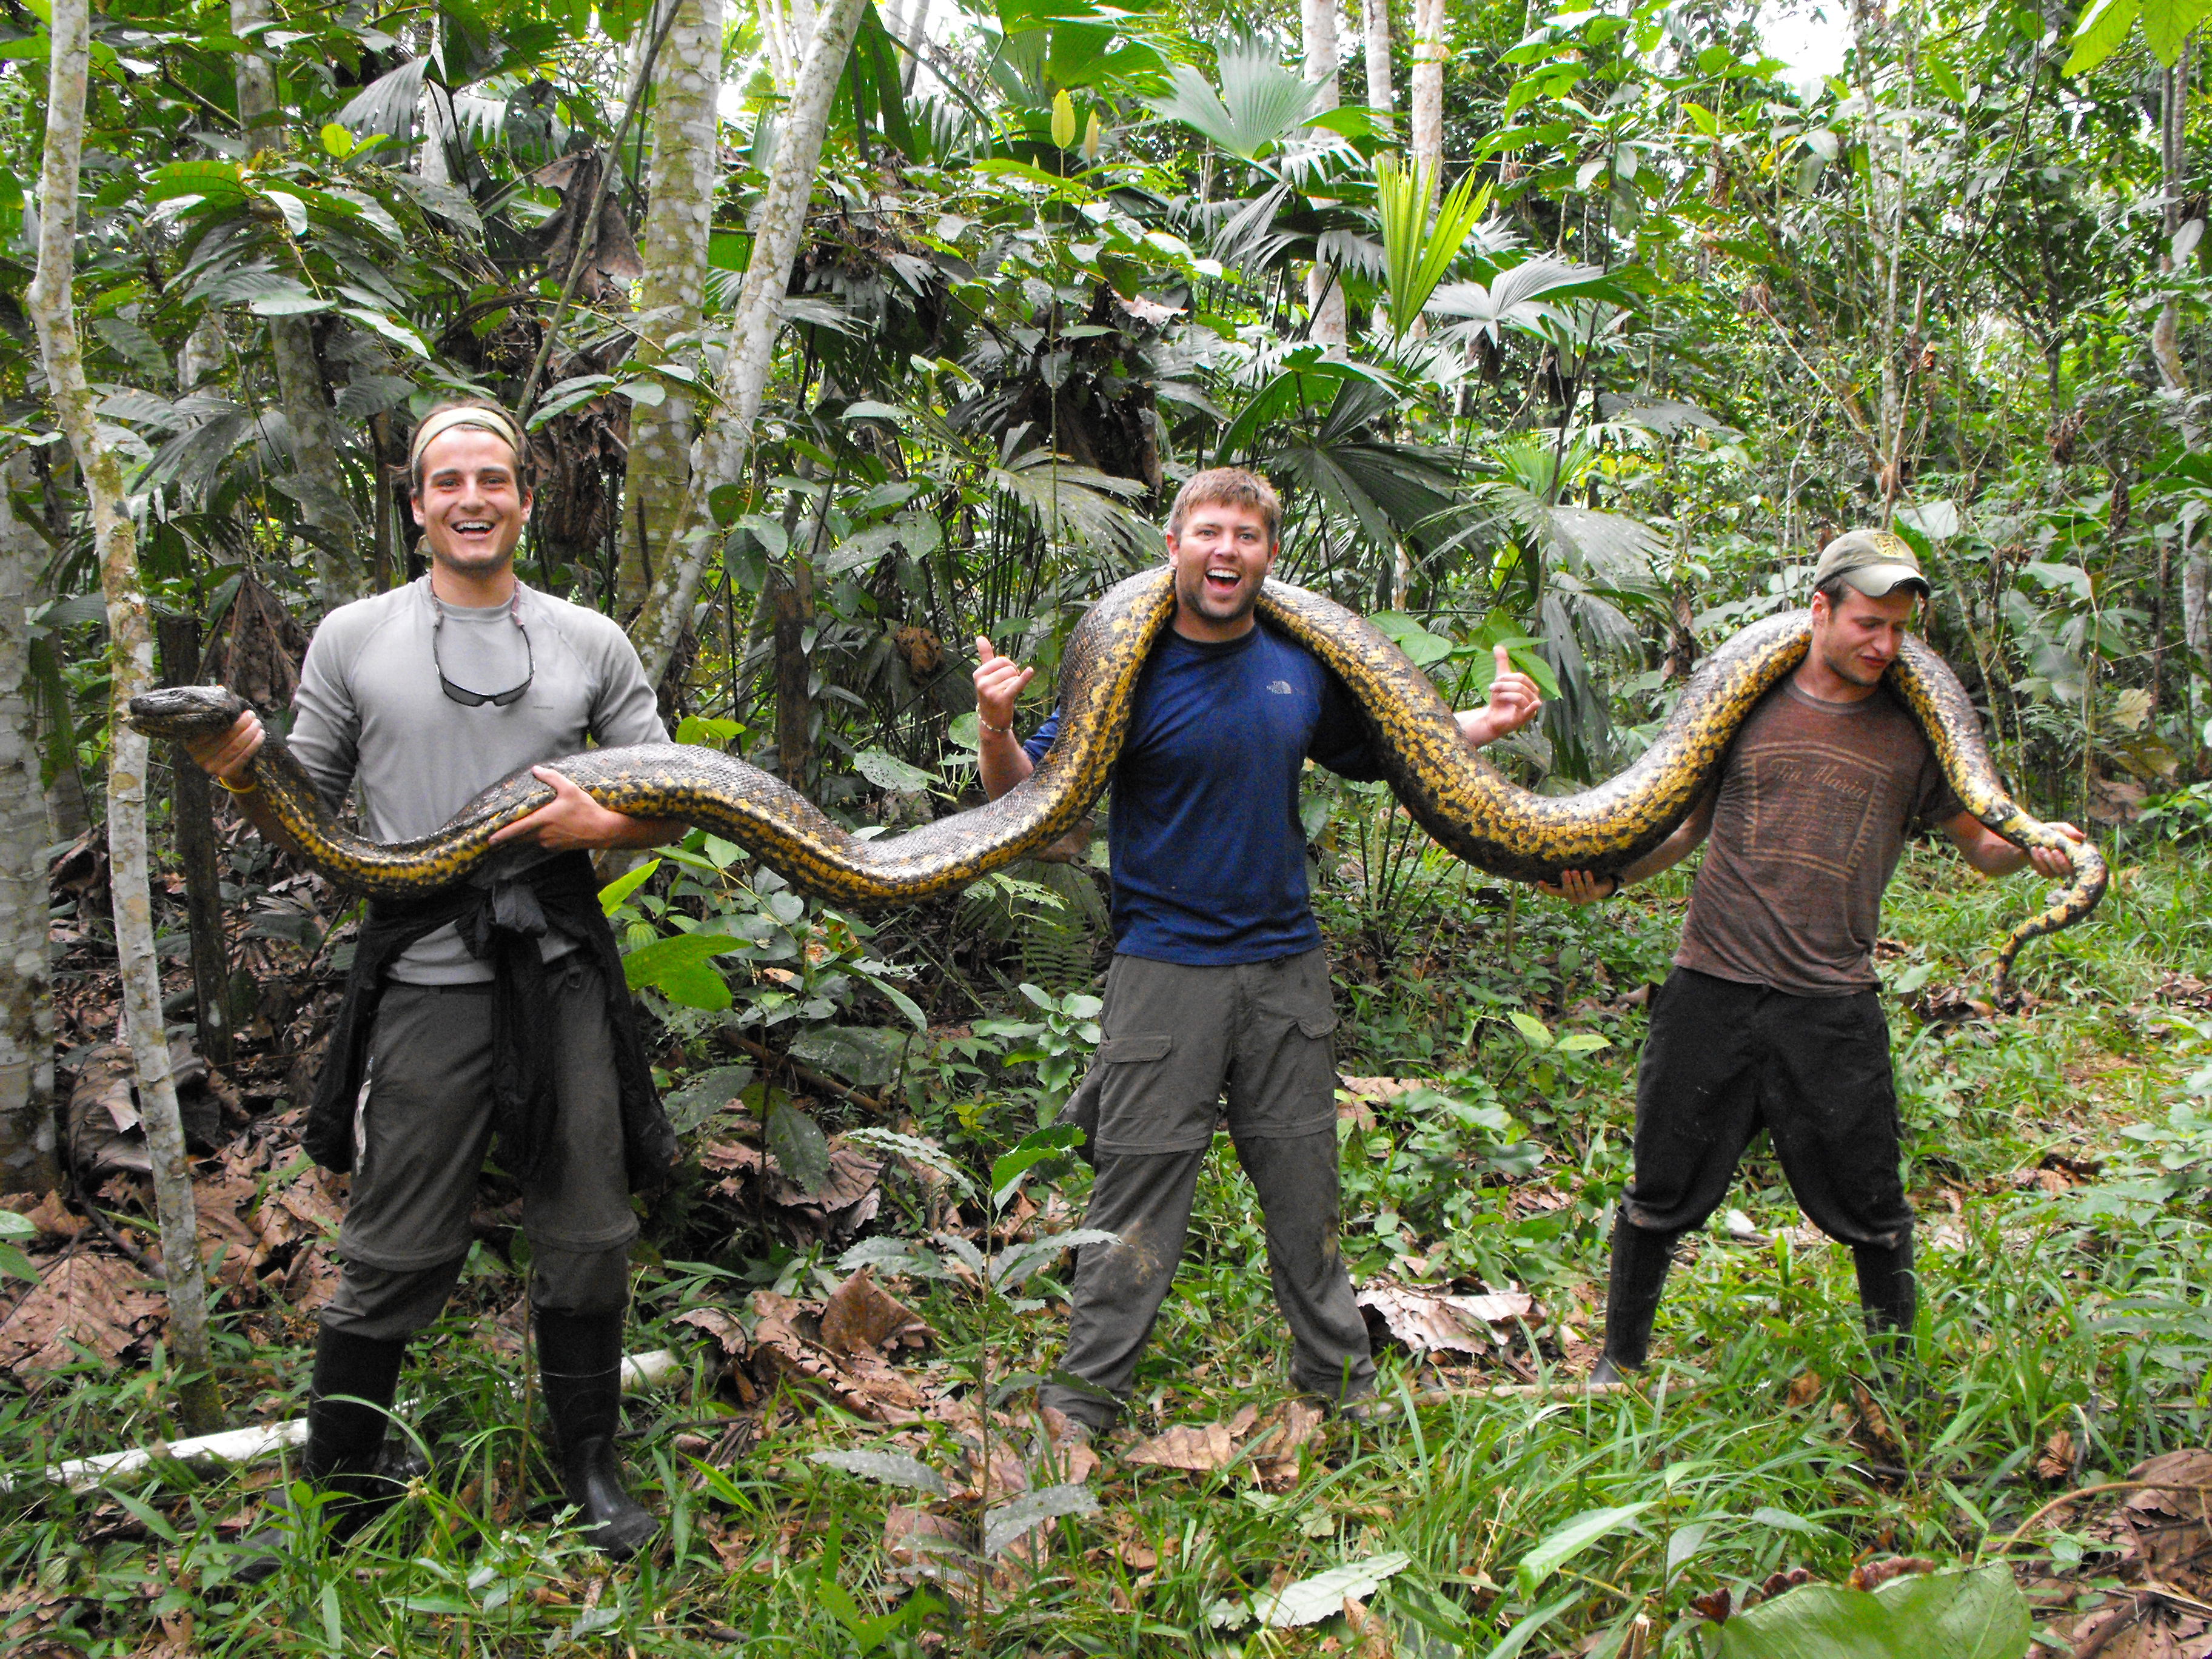 Змеи в тропическом лесу. Южная Америка Амазонка Анаконда. Анаконда в джунглях амазонки. Анаконда в джунглях.